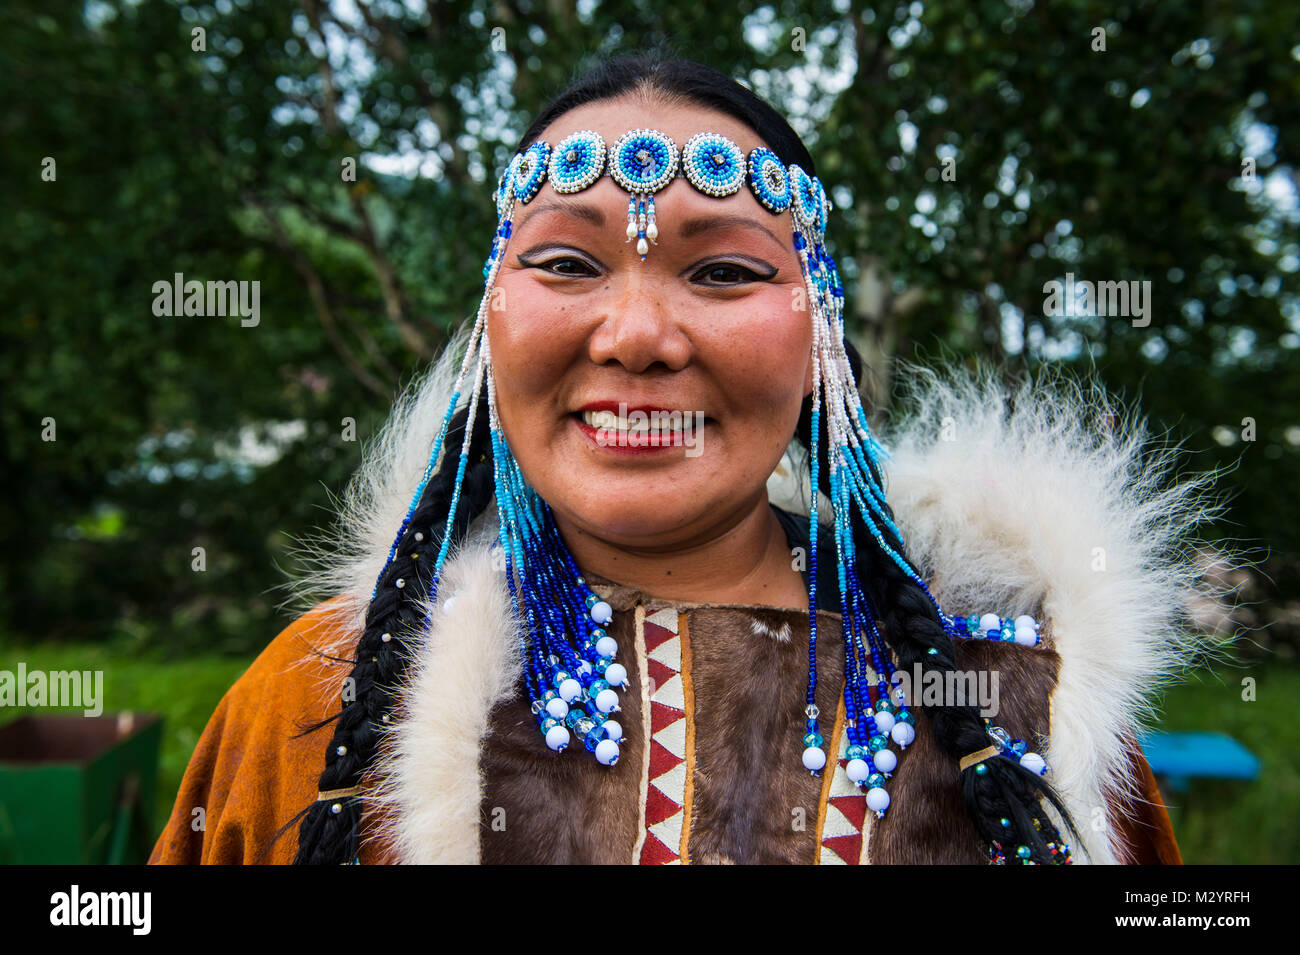 Traditionell gekleidet - Korjaken der Ureinwohner Kamtschatkas Frau in Esso, Russland Stockfoto